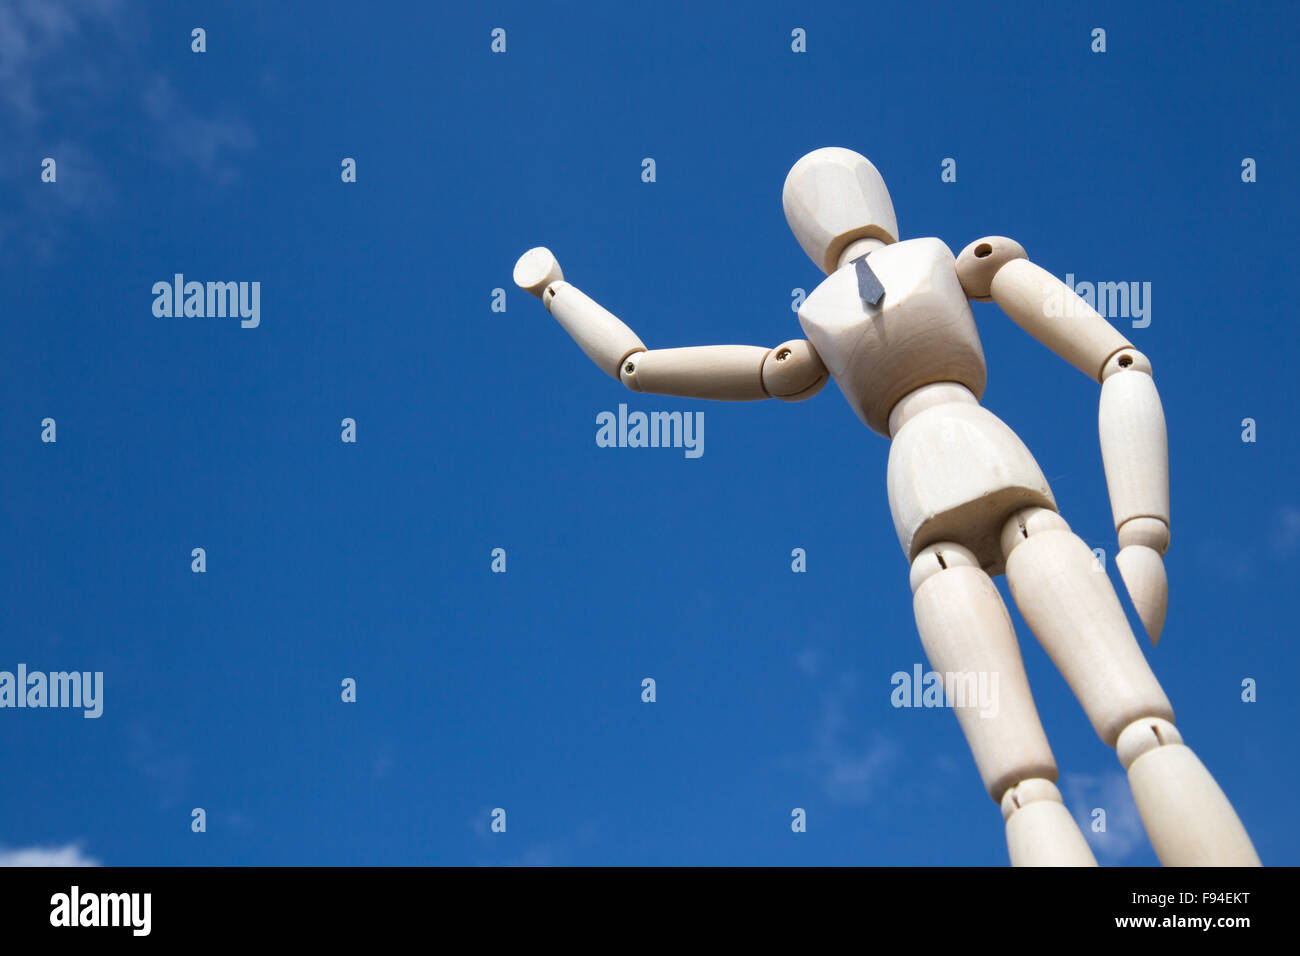 Businessman waving marionnette géante en face de ciel bleu en plein soleil Banque D'Images